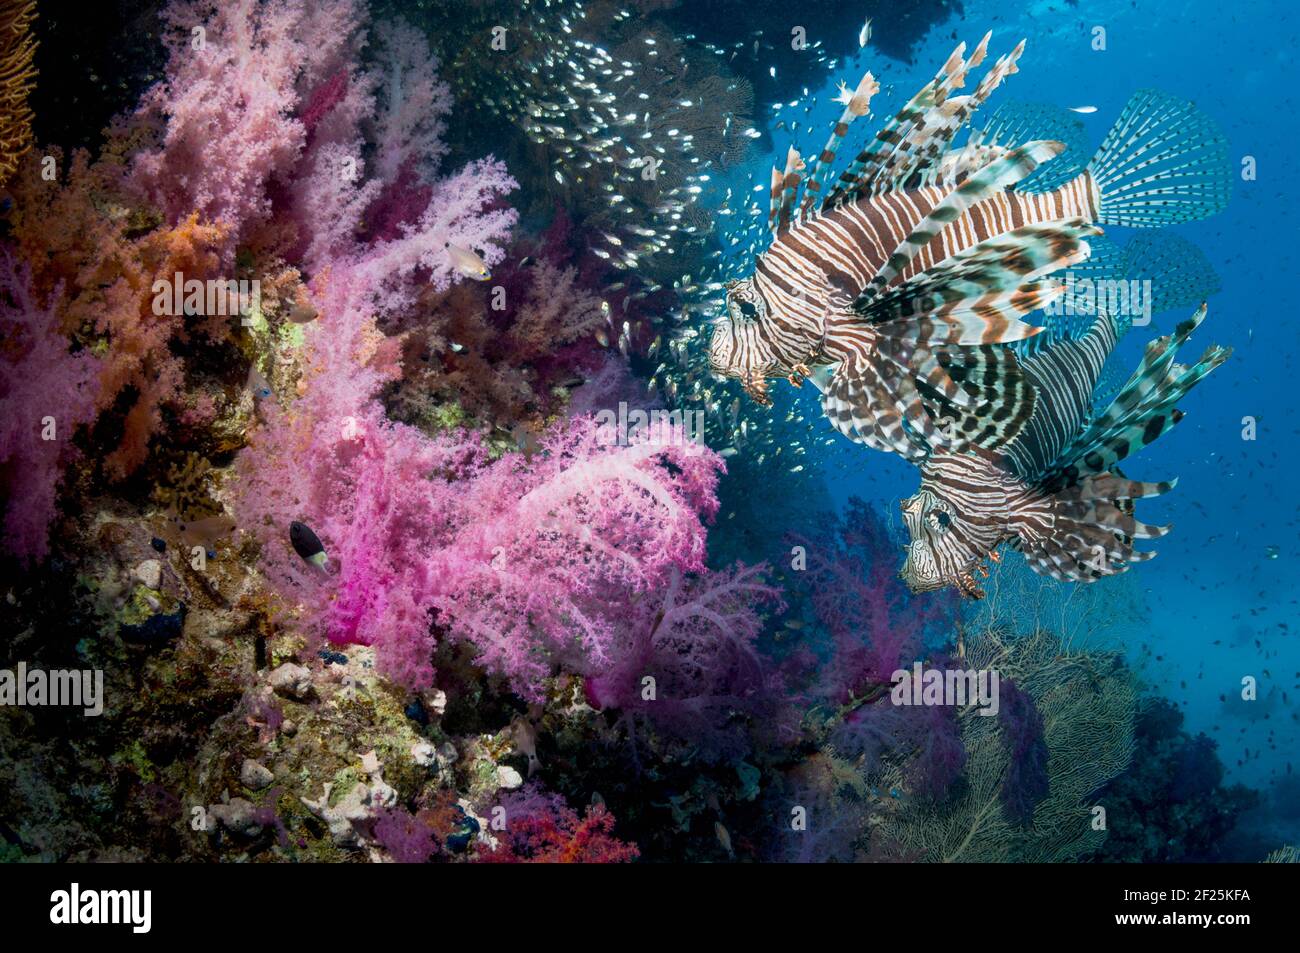 Décor de récif corallien avec une paire de lionfish rouge (Pterois volitans), des coraux mous (Dendronephthya sp) et une école de balayeuses pygmées (Parapriacanthus gue Banque D'Images